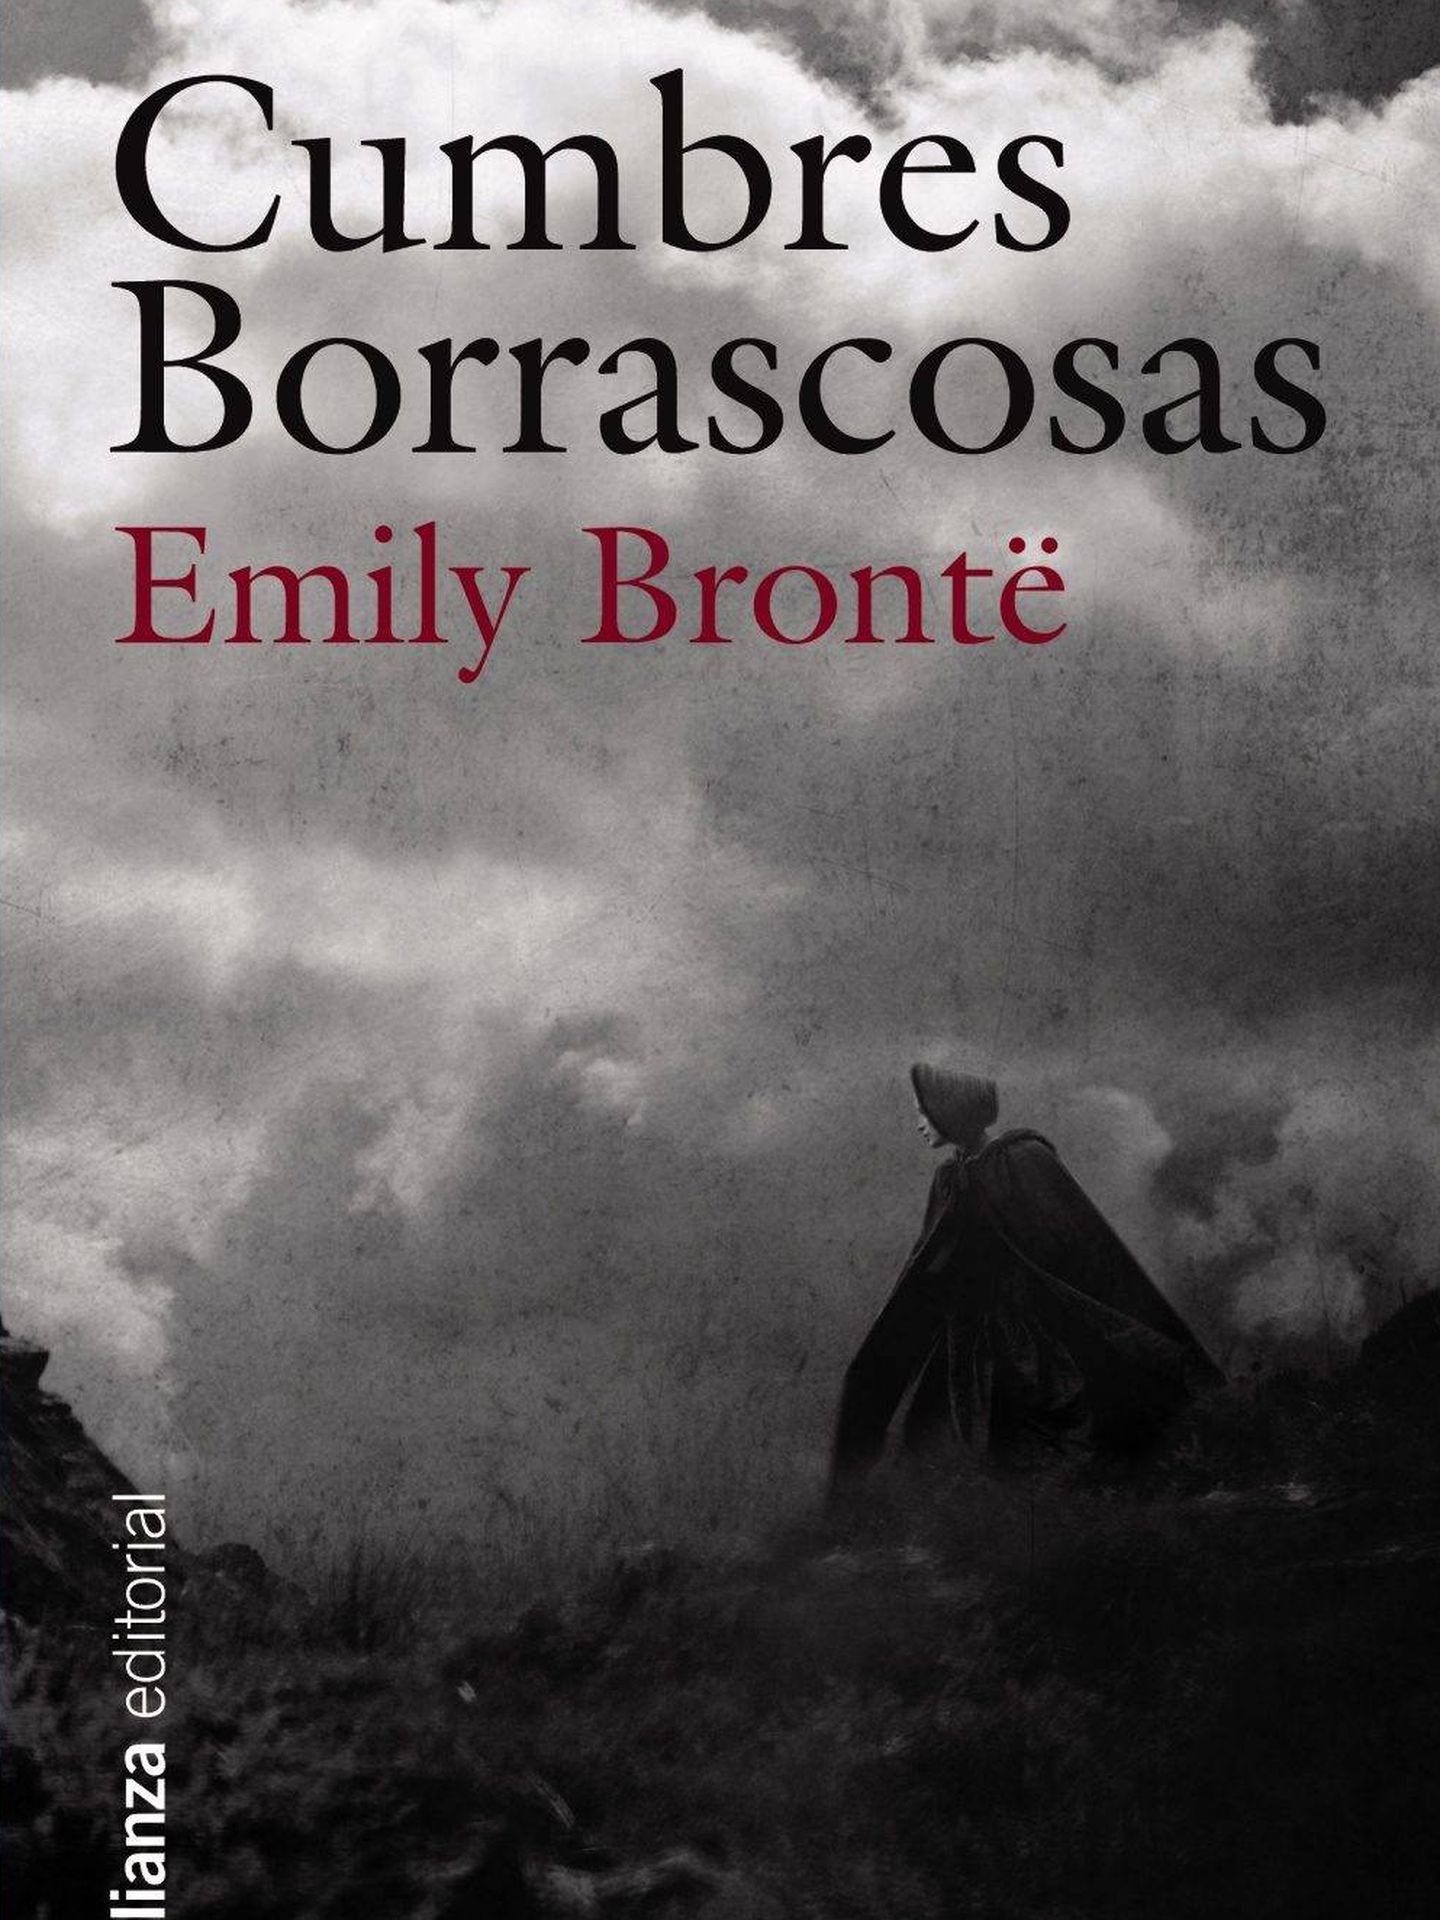 Cumbres borrascosas, de Emily Bronte.